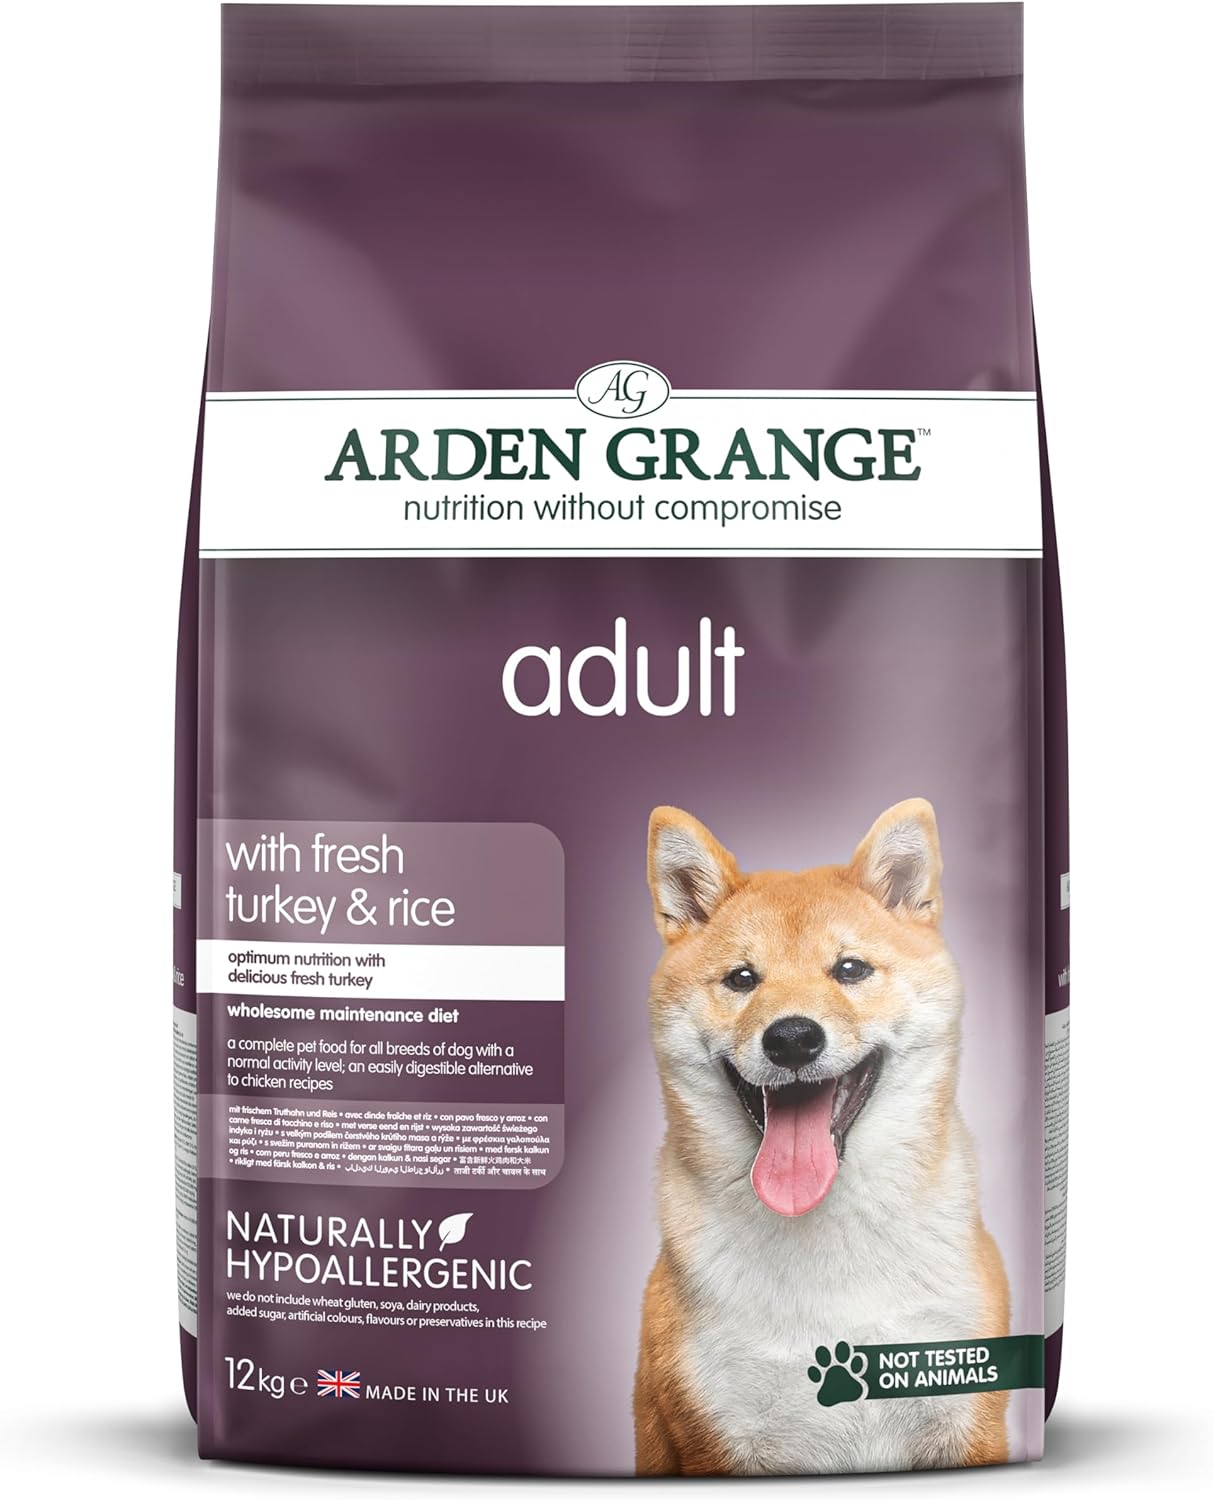 Arden Grange Adult with fresh turkey & rice 12kg